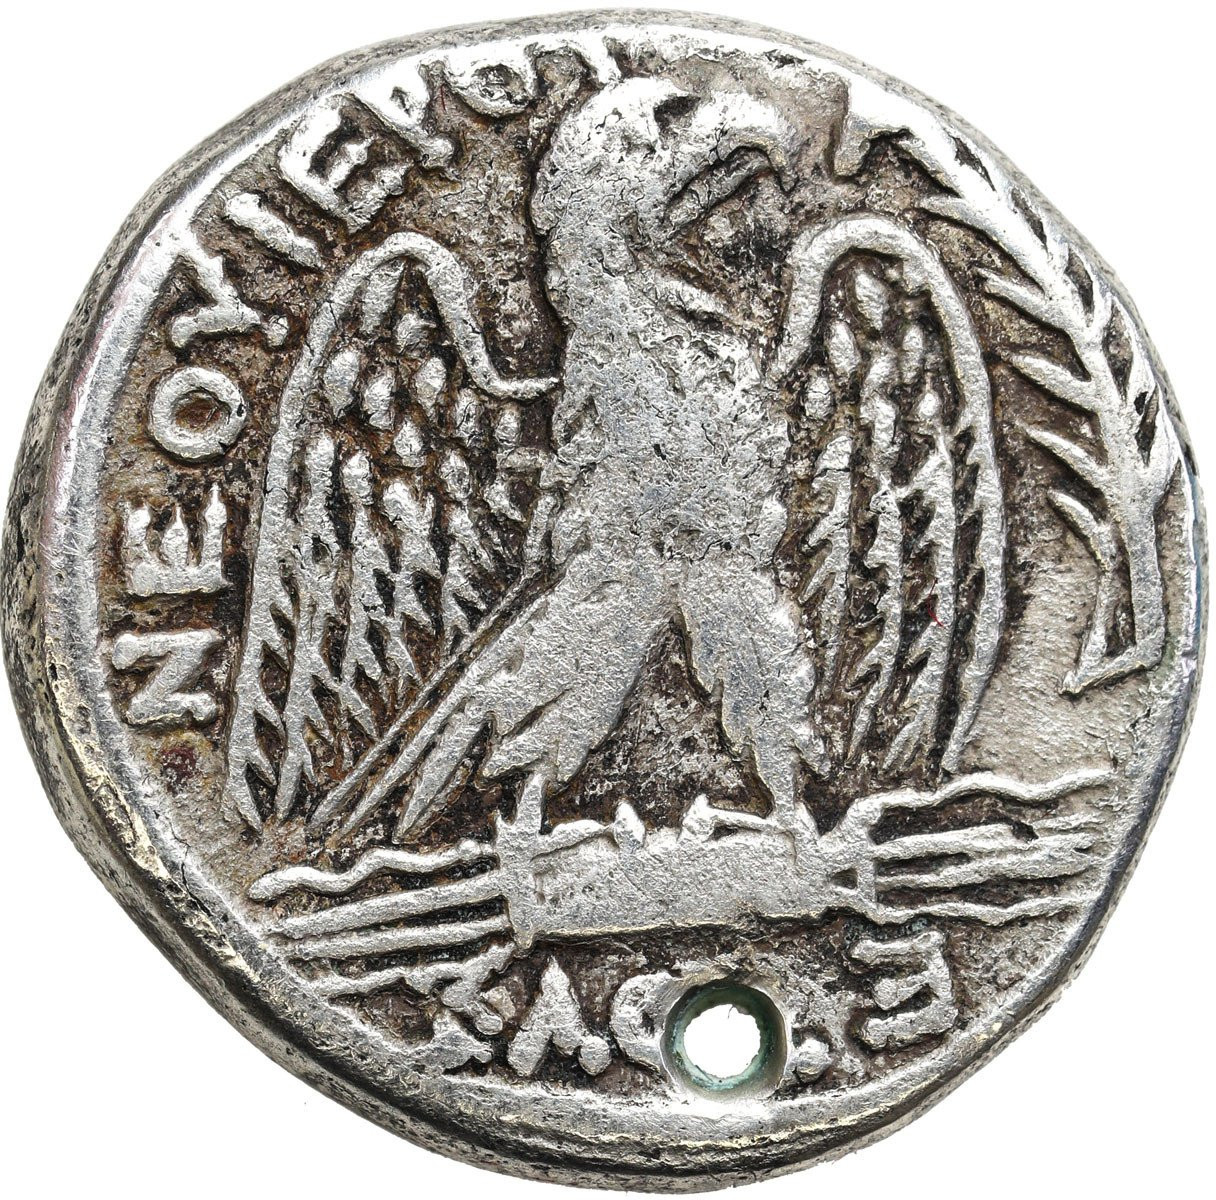 Prowincje Rzymskie, Syria, Tetradrachma, Wespazjan 69 – 79 n.e., Antiochia nad Orontesem